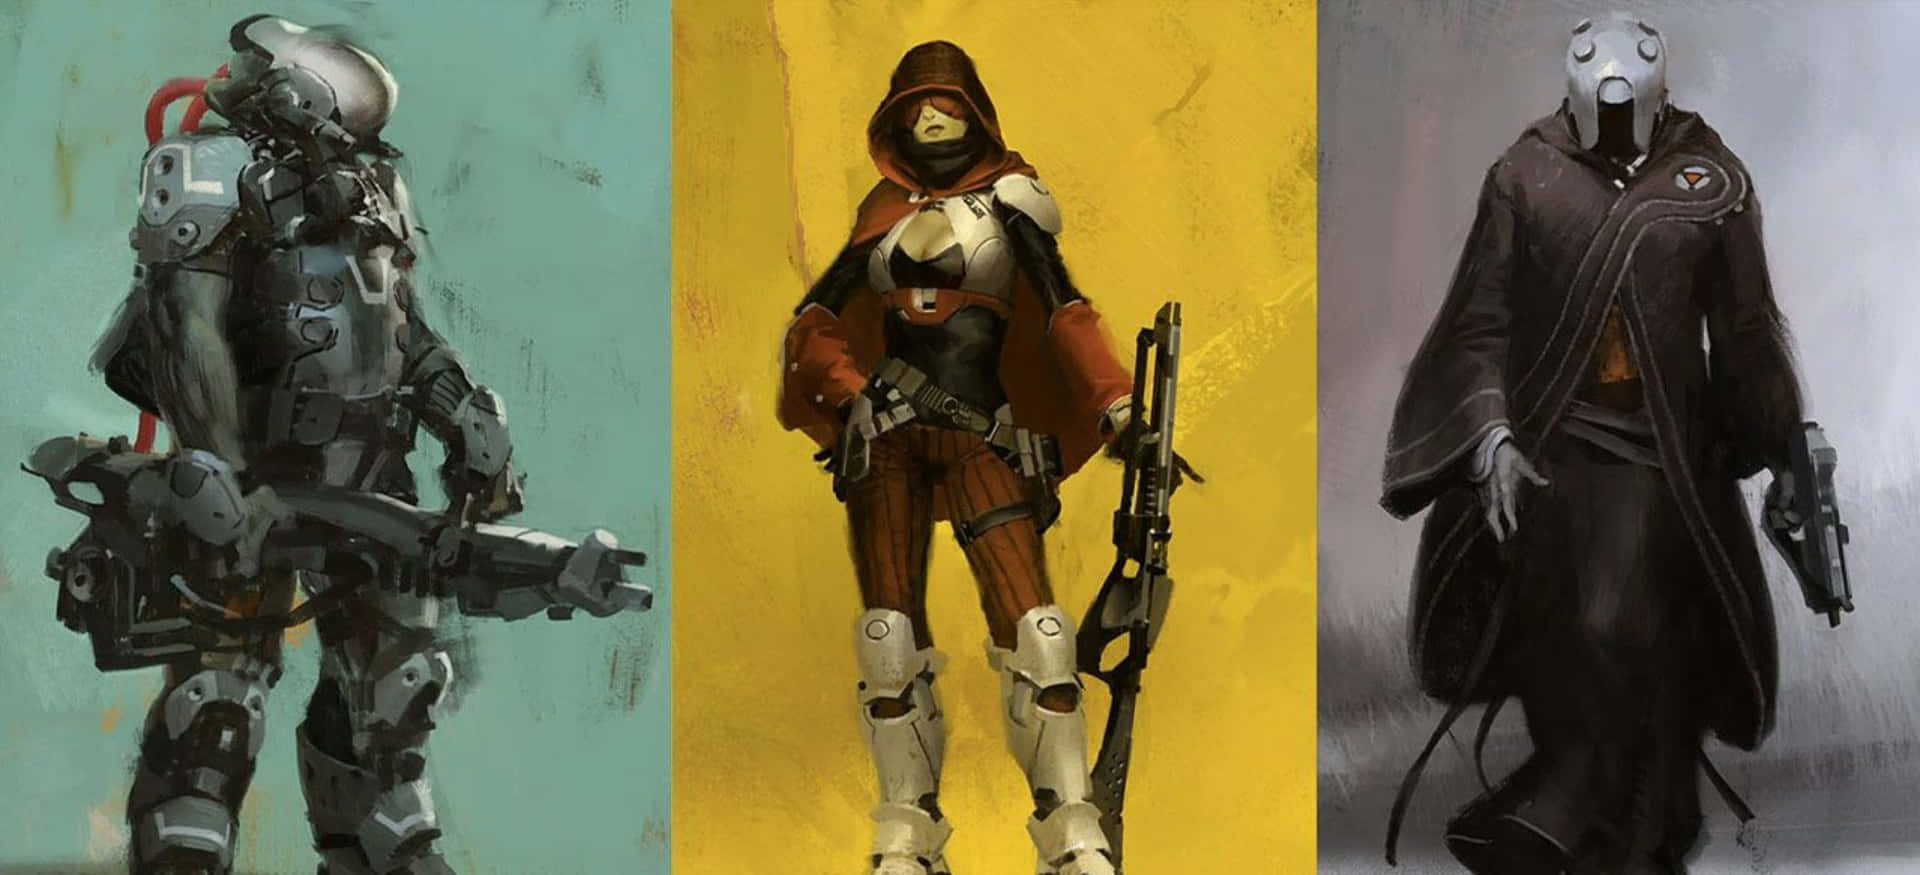 Guardians Unite - Destiny Characters line up for battle Wallpaper